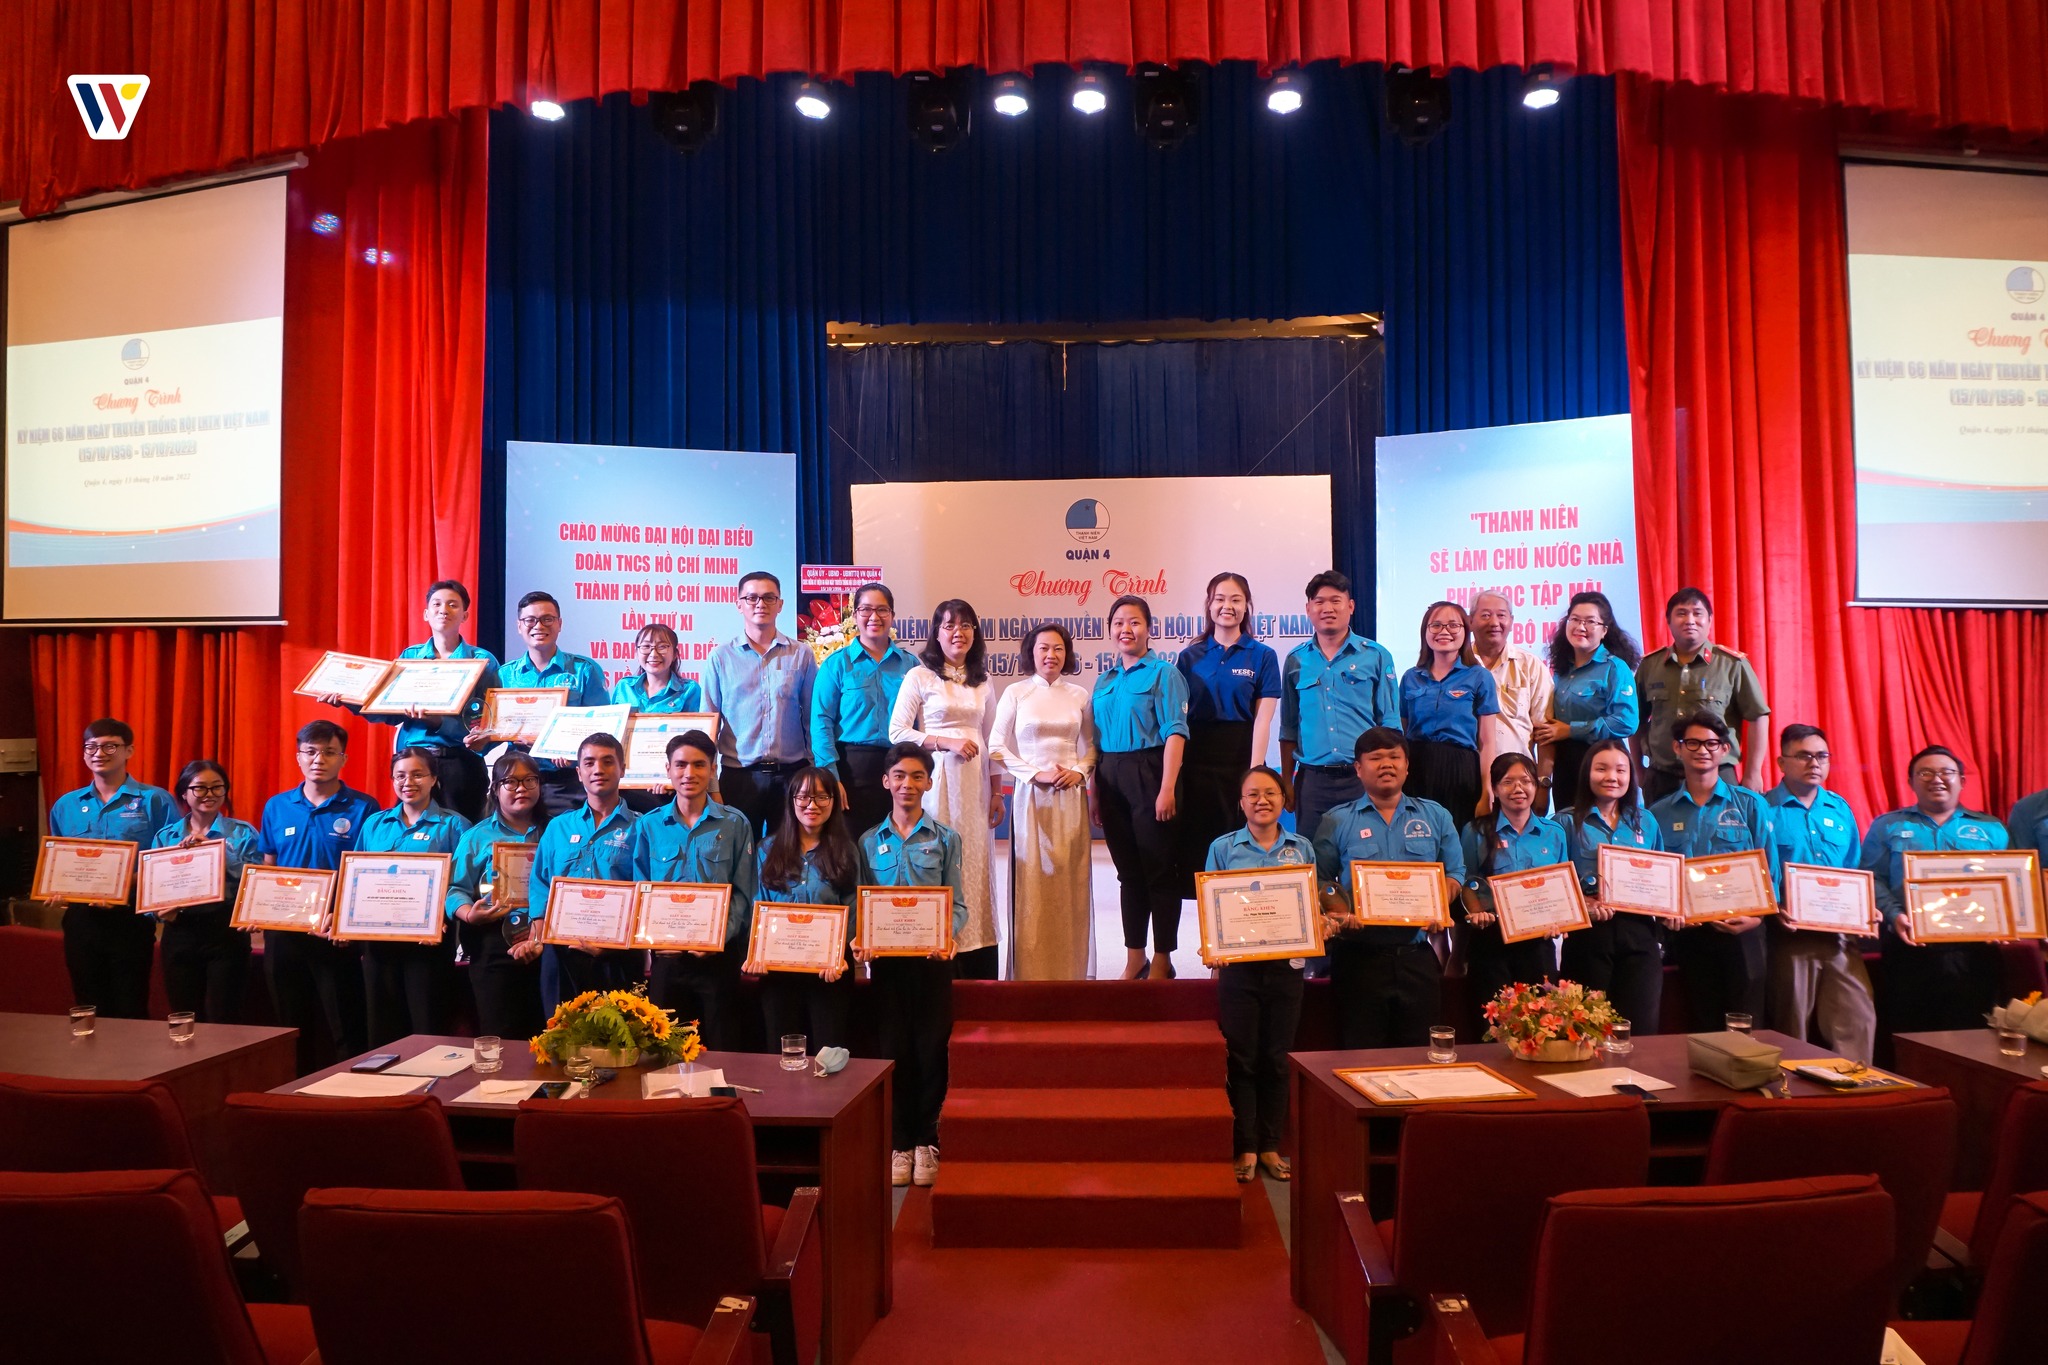 WESET ký kết hợp tác với Quận Đoàn – Hội Liên hiệp thanh niên Việt Nam quận 4